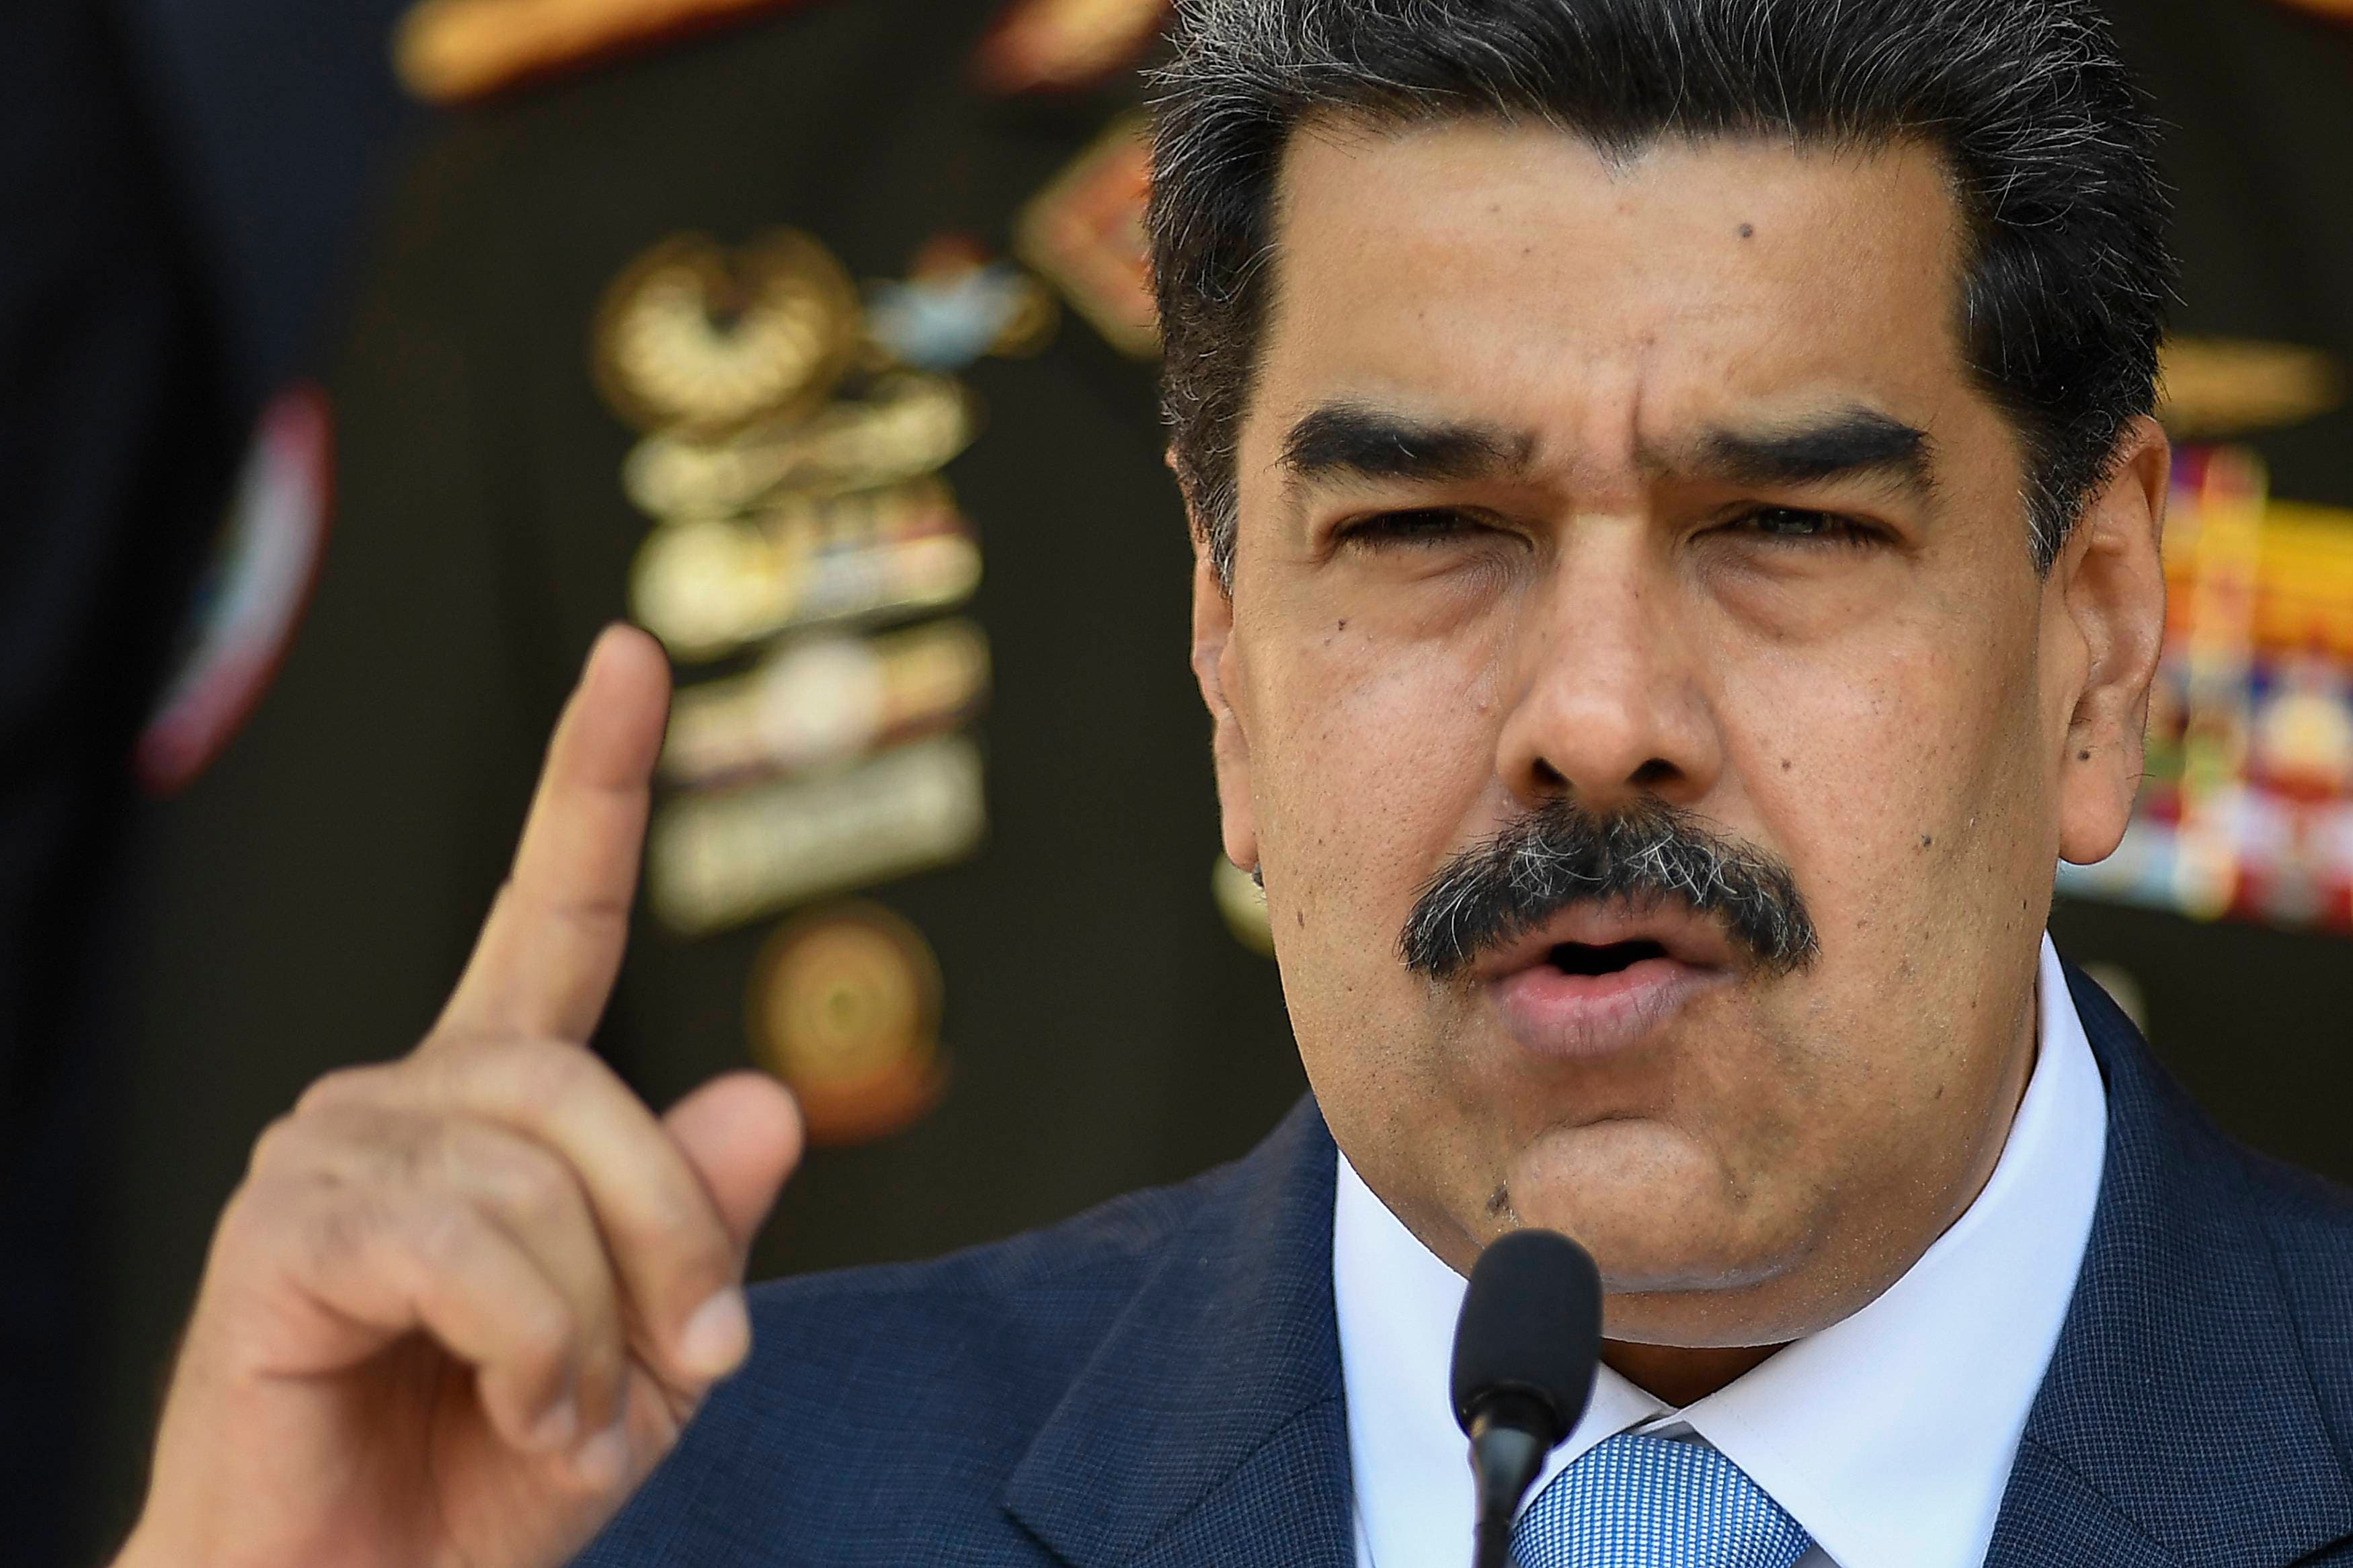 Maduro da 72 horas a la embajadora de la UE para que abandone Venezuela